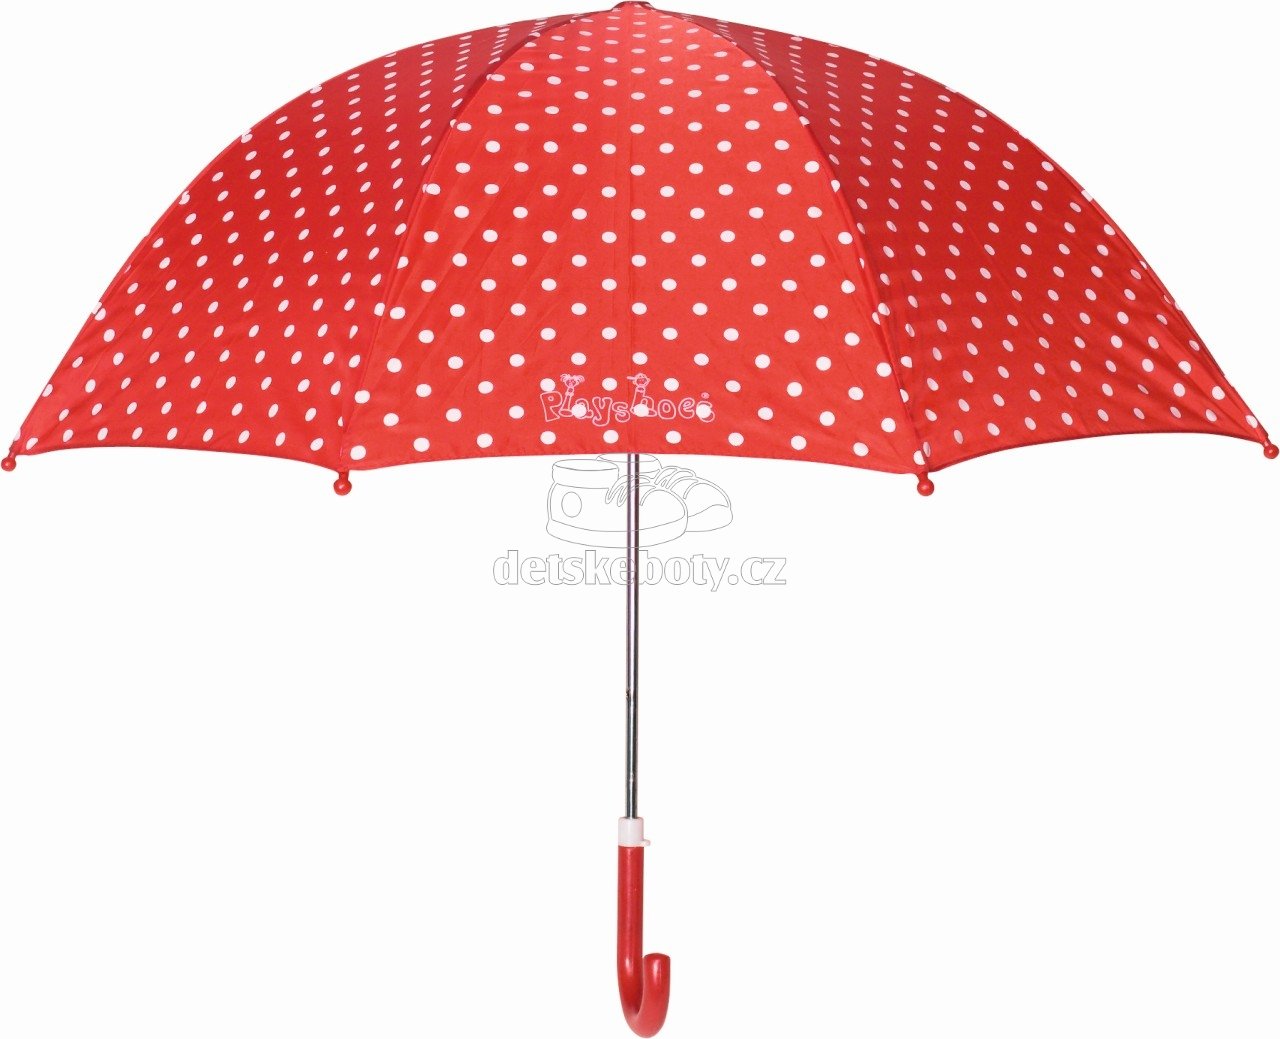 Deštník Playshoes 441767 dots červený